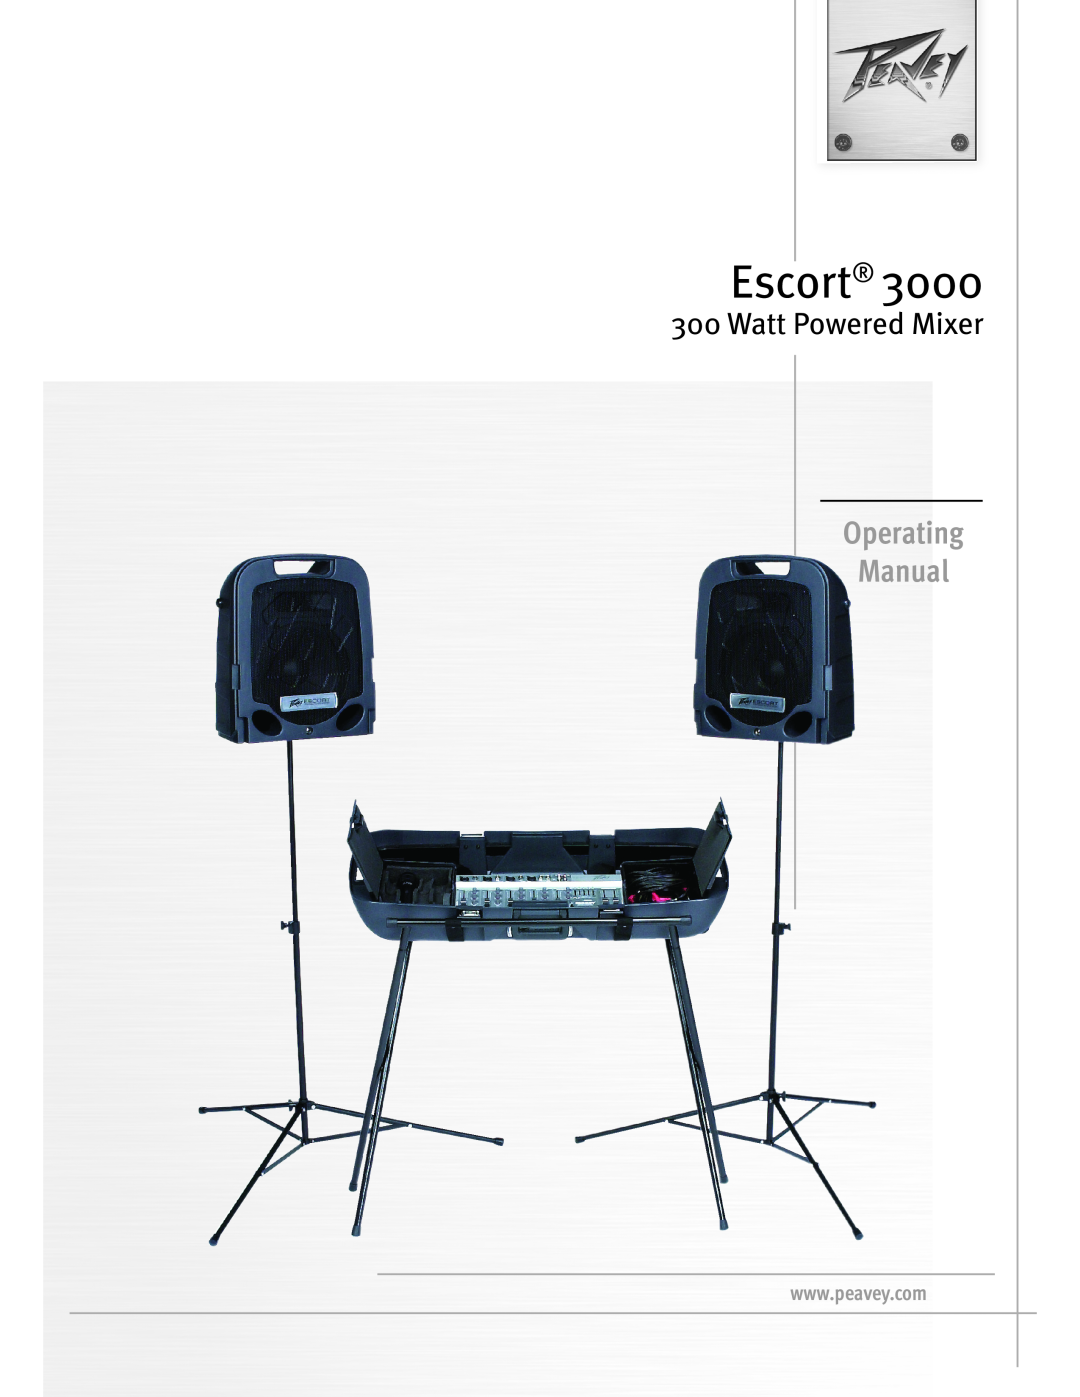 Peavey 3000 manual Escort, Features 